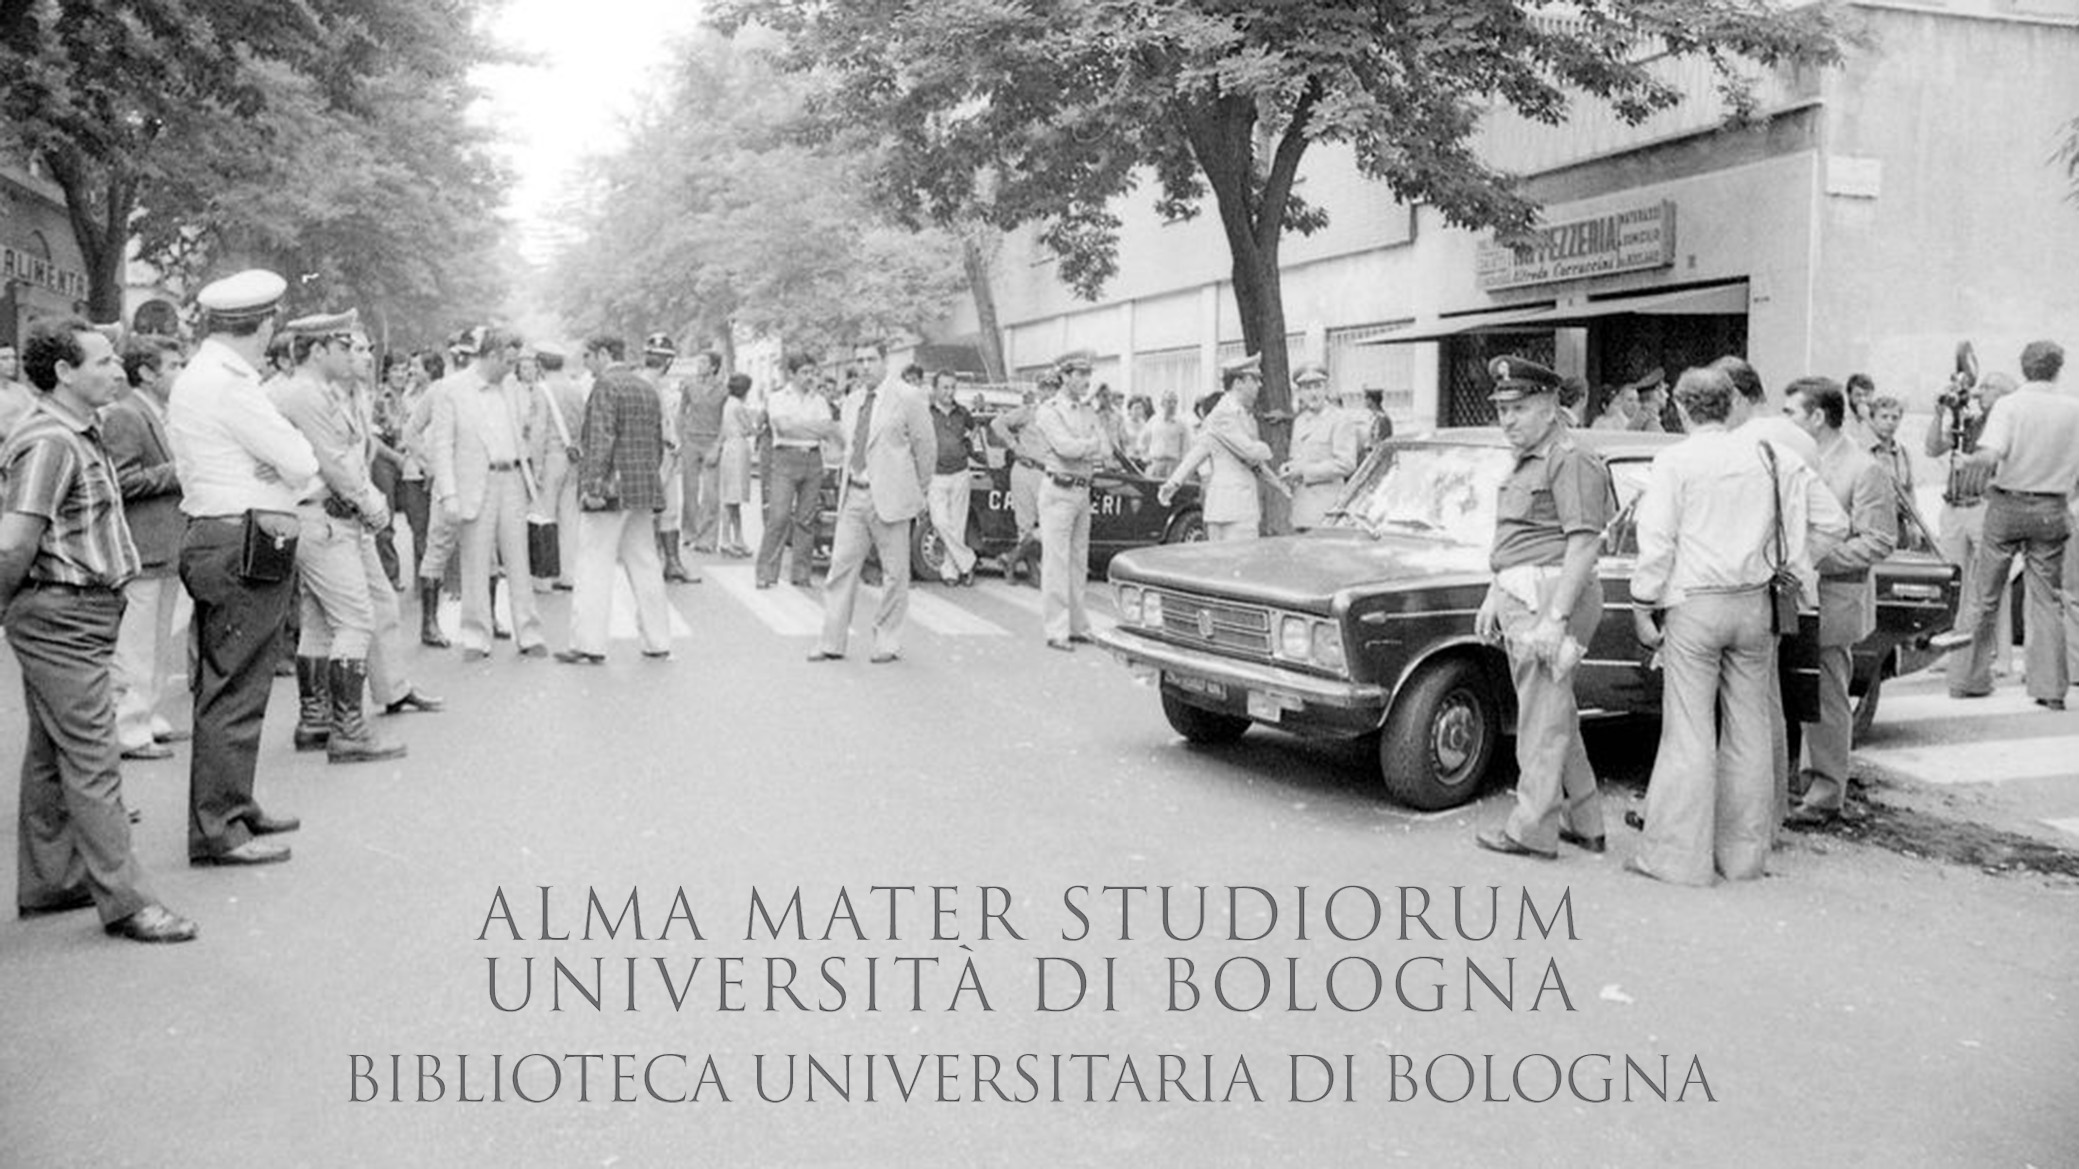 1976: Omicidio del magistrato Vittorio Occorsio in via Mogadiscio. Roma, 10.7.1976